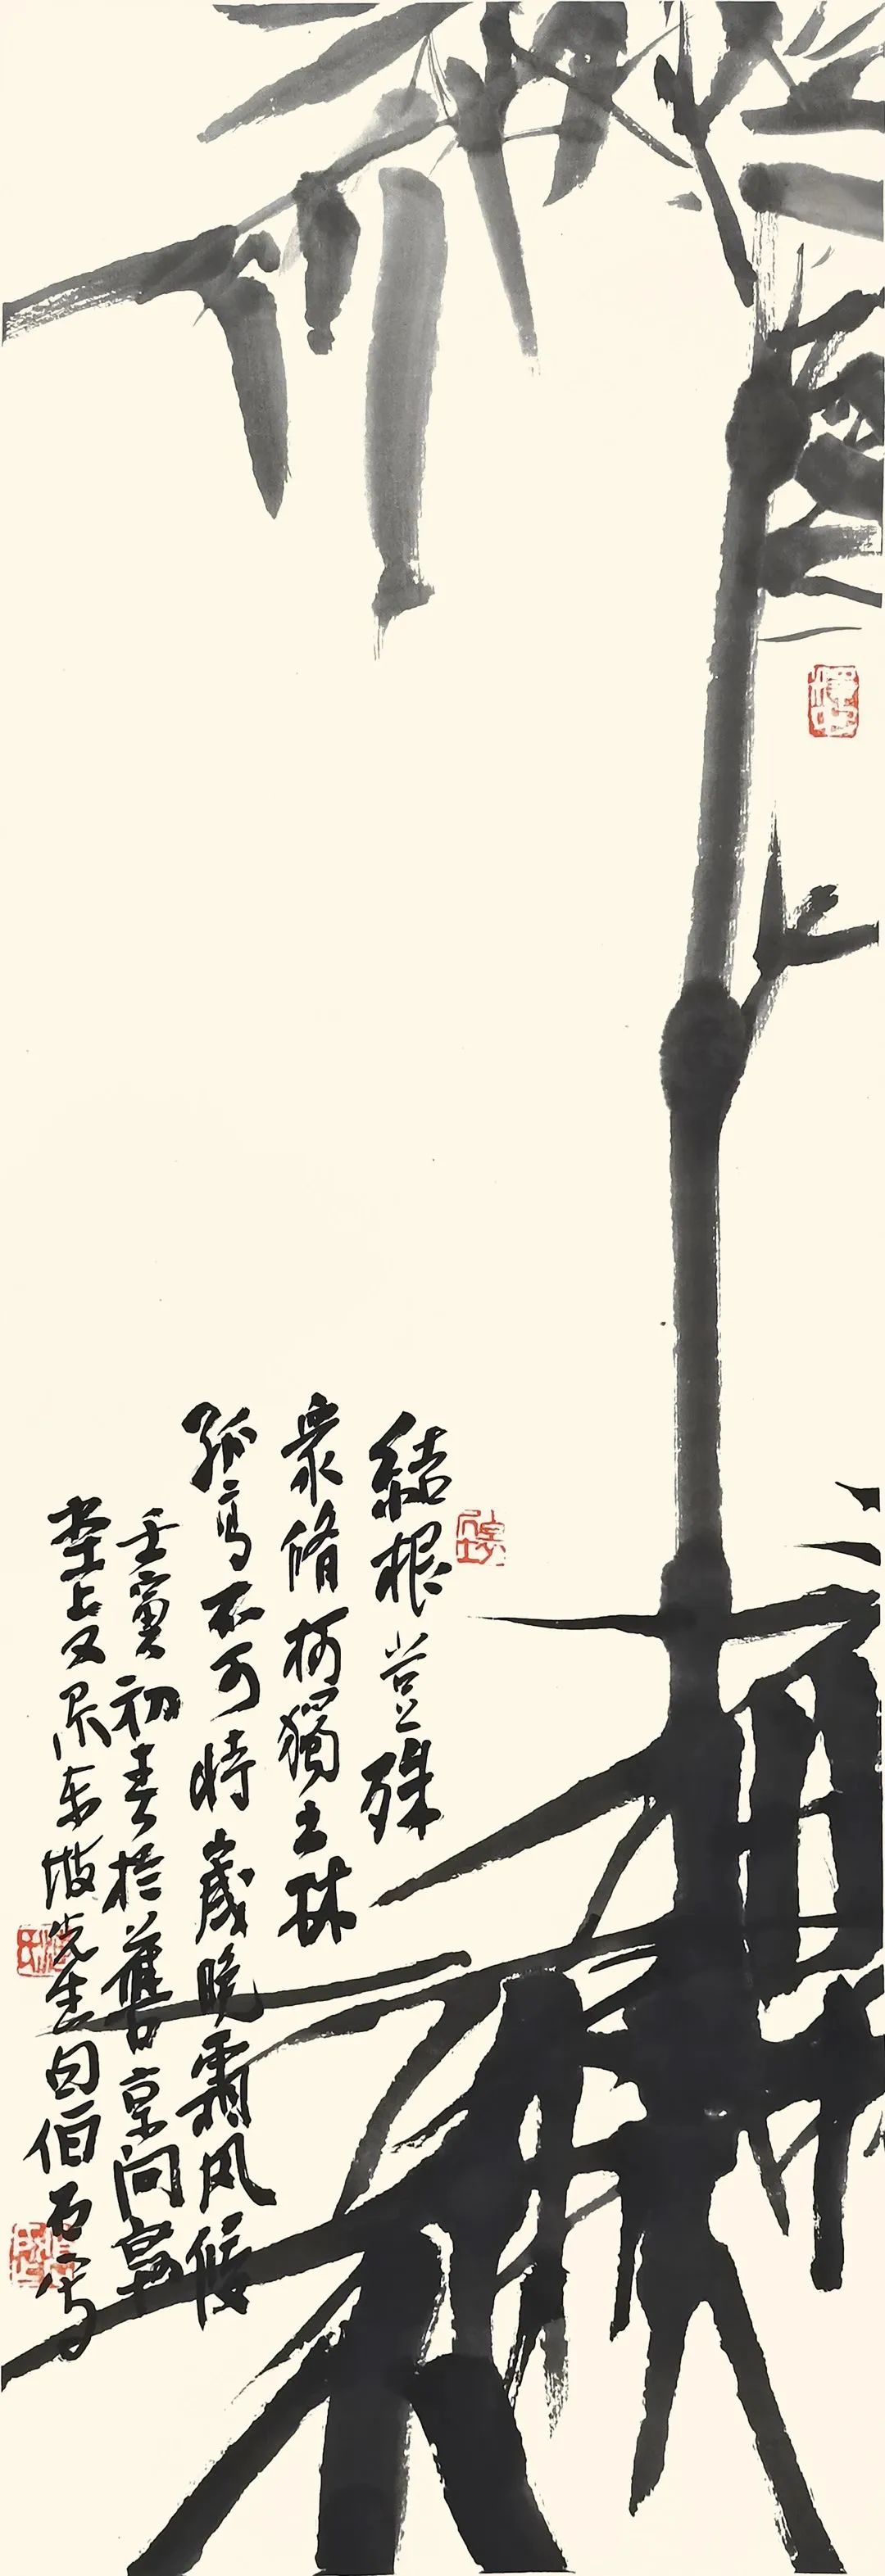 “须弥探道——海德恕、董扬、刘贞麟书画印作品展”4月15日将在呼和浩特开幕